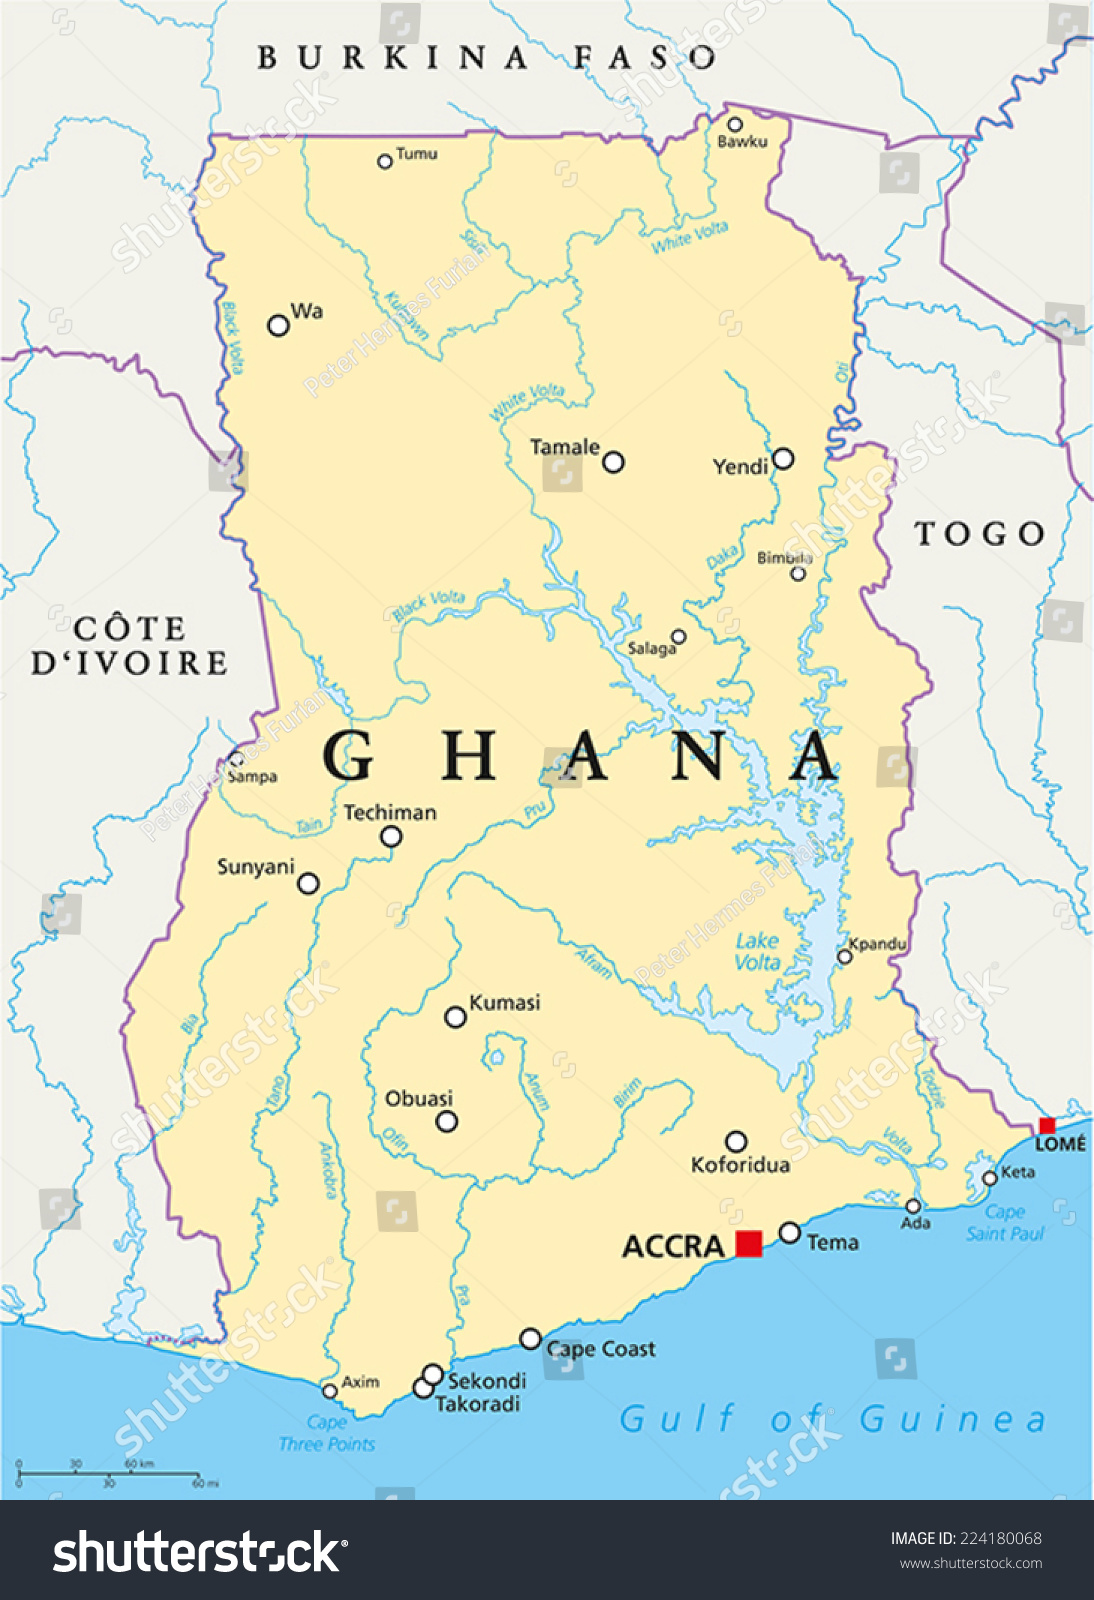 Carte politique du Ghana avec la : image vectorielle de stock (libre de droits) 224180068